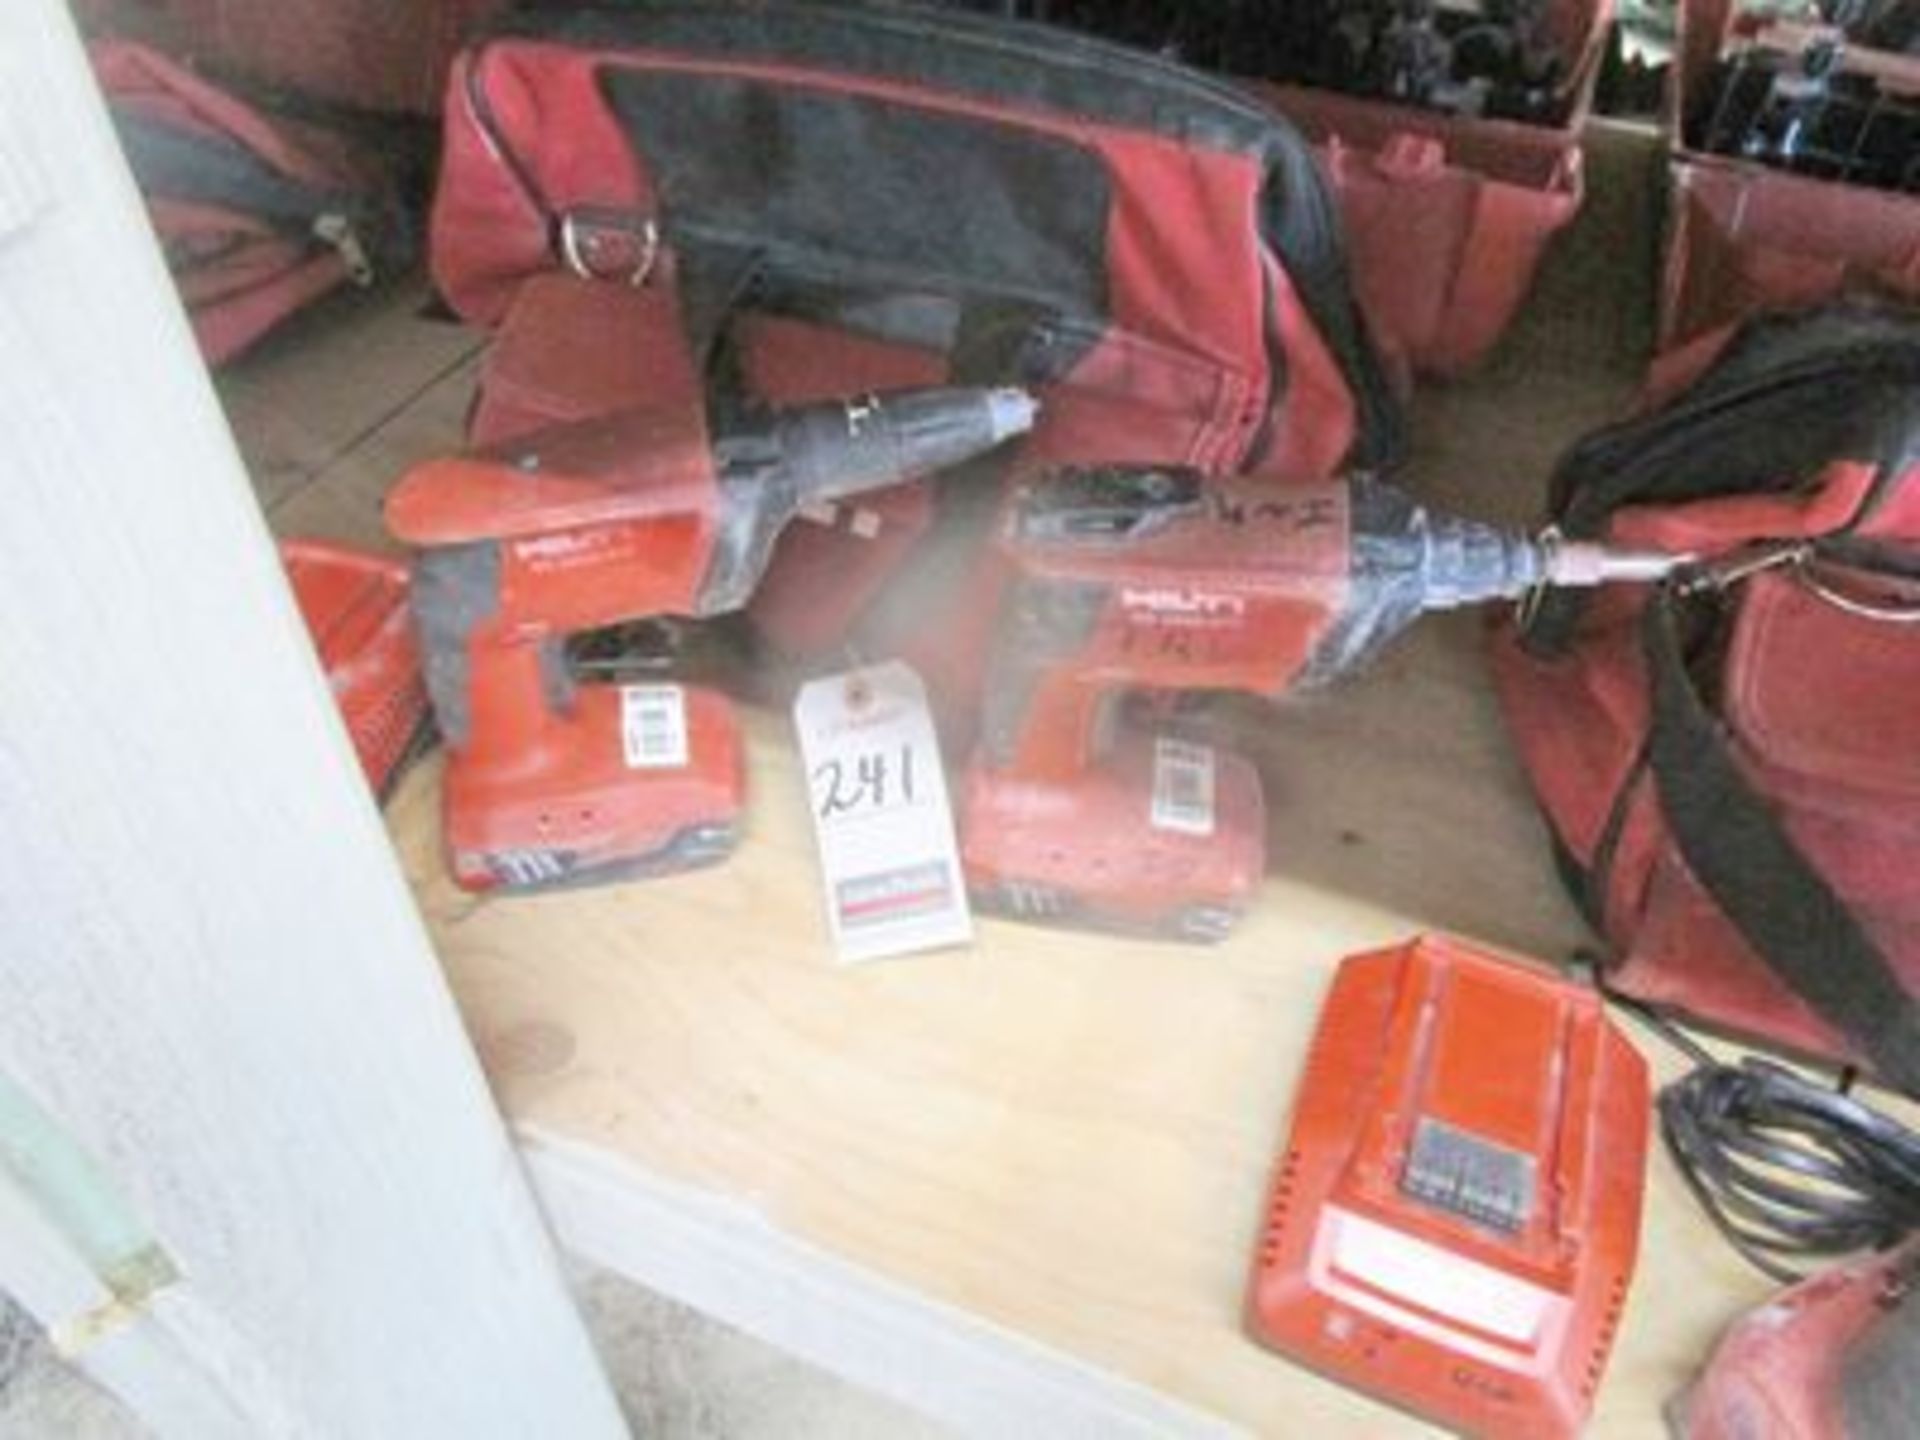 HILTI 5D DRYWALL SCREW GUNS, 4500-A18 W/ CHARGER & HILTI BAG